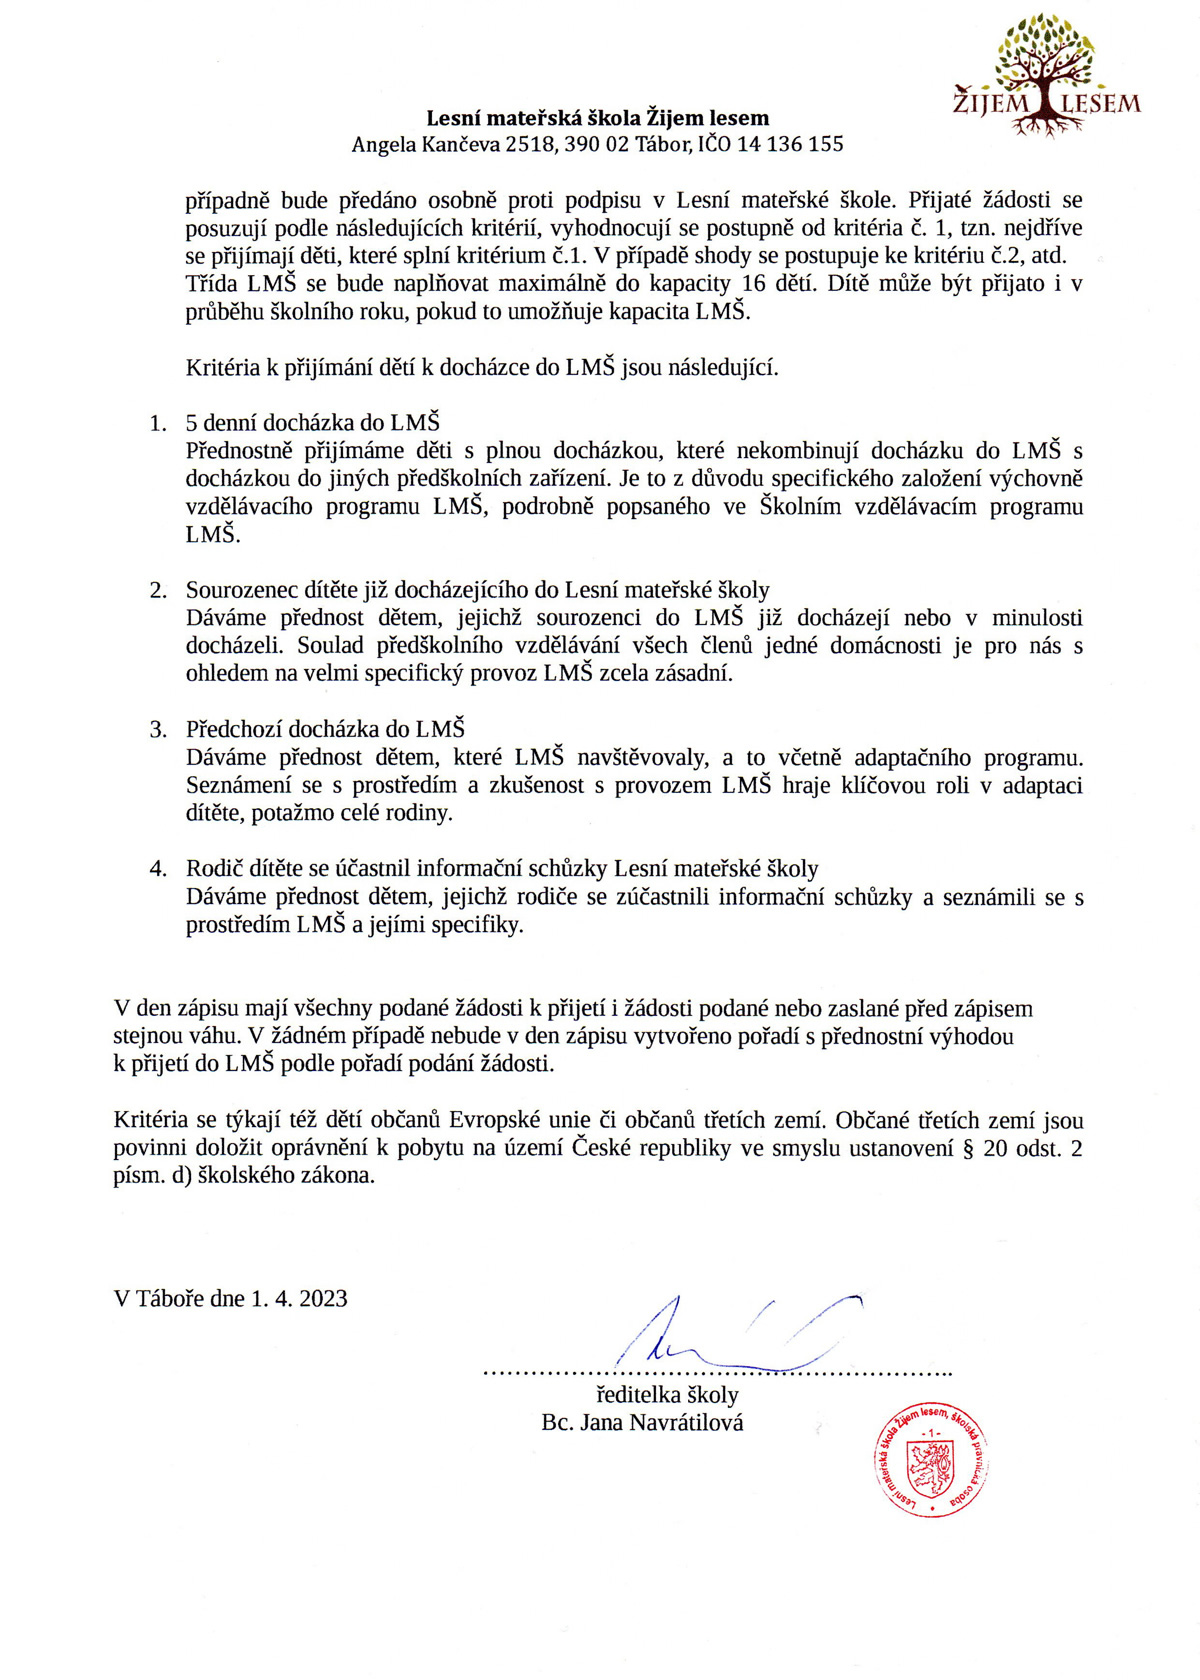 Kritéria zápisu 2023 / 2024, strana 2 - Zijemlesem.cz